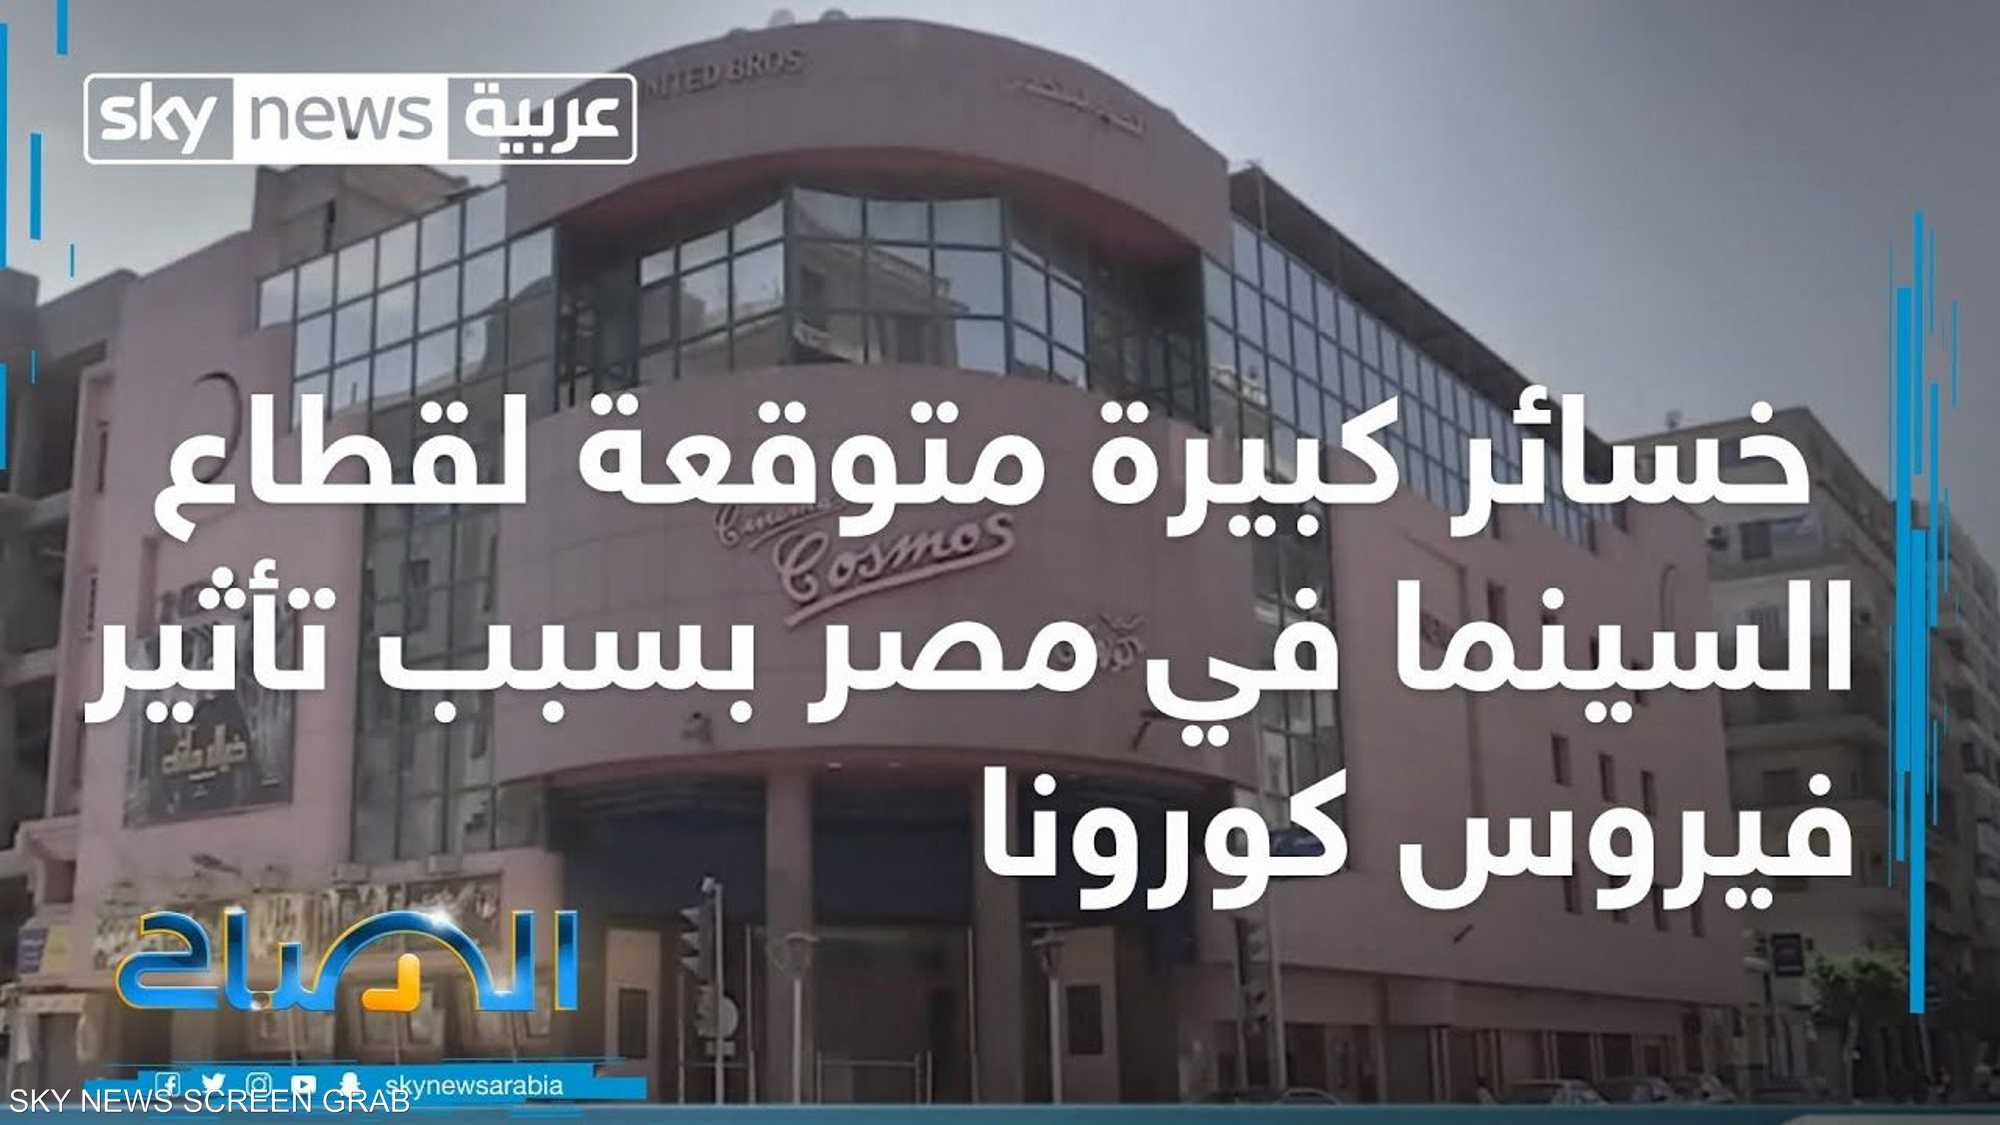 خسائر كبيرة متوقعة لقطاع السينما في مصر بسبب تأثير كورونا